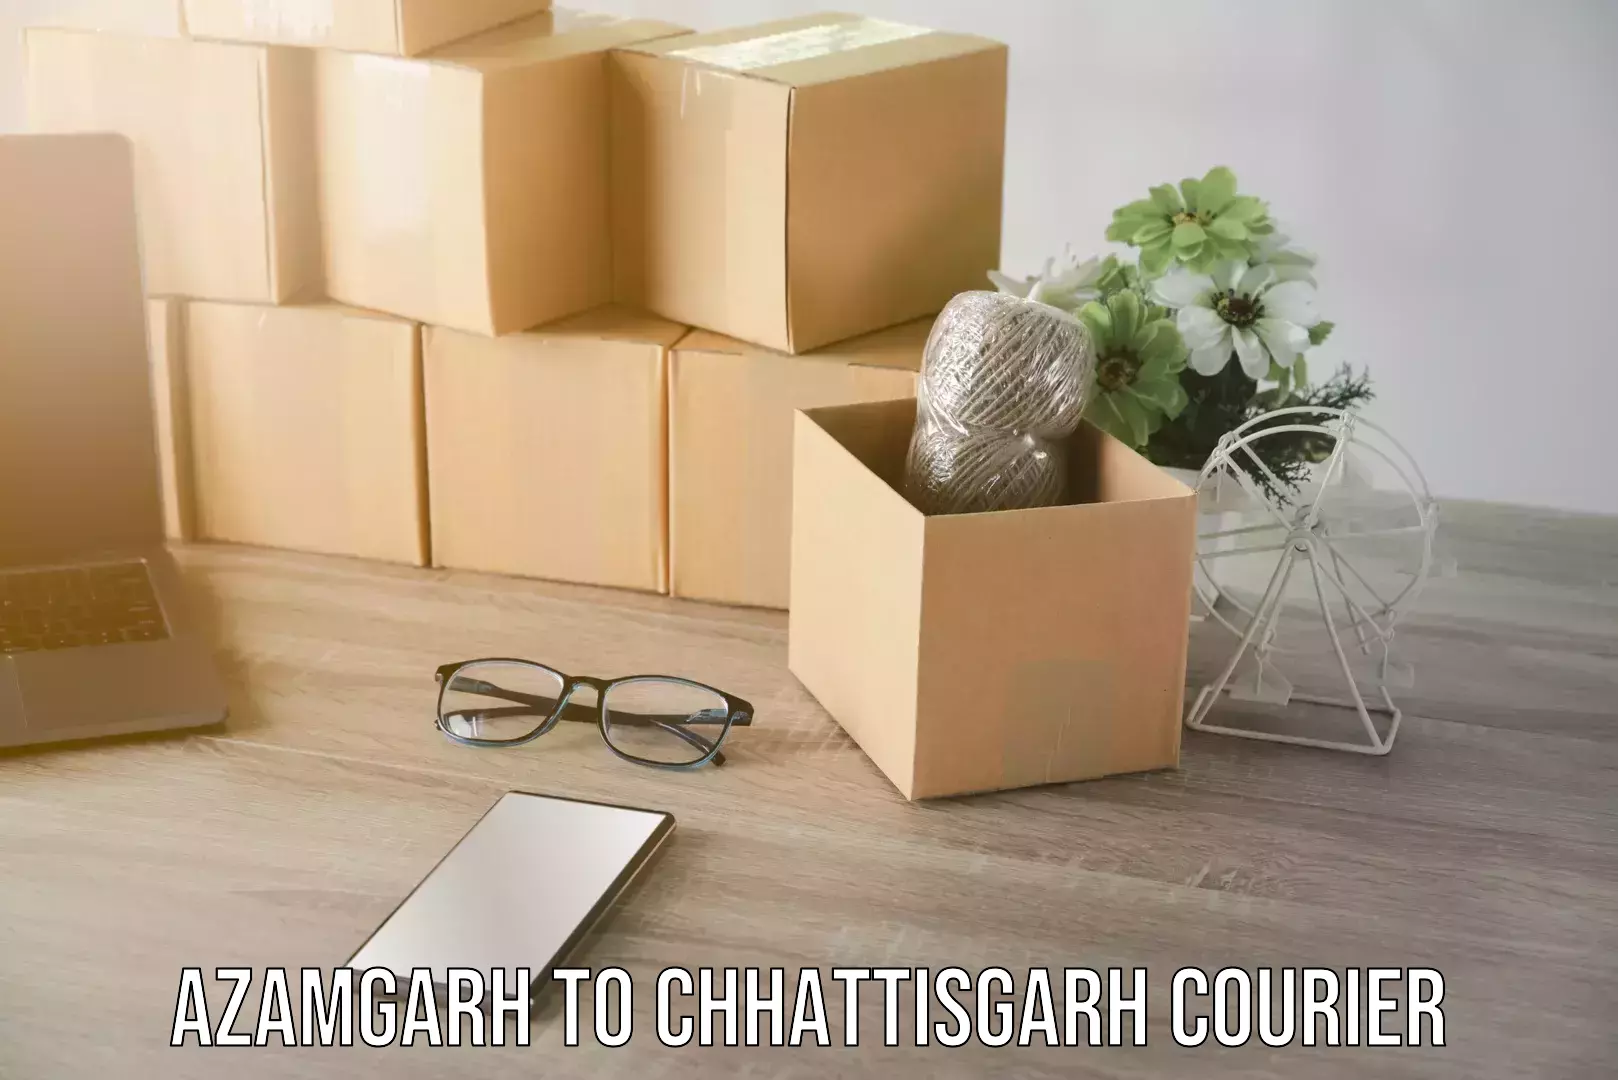 Courier service comparison Azamgarh to Chhattisgarh